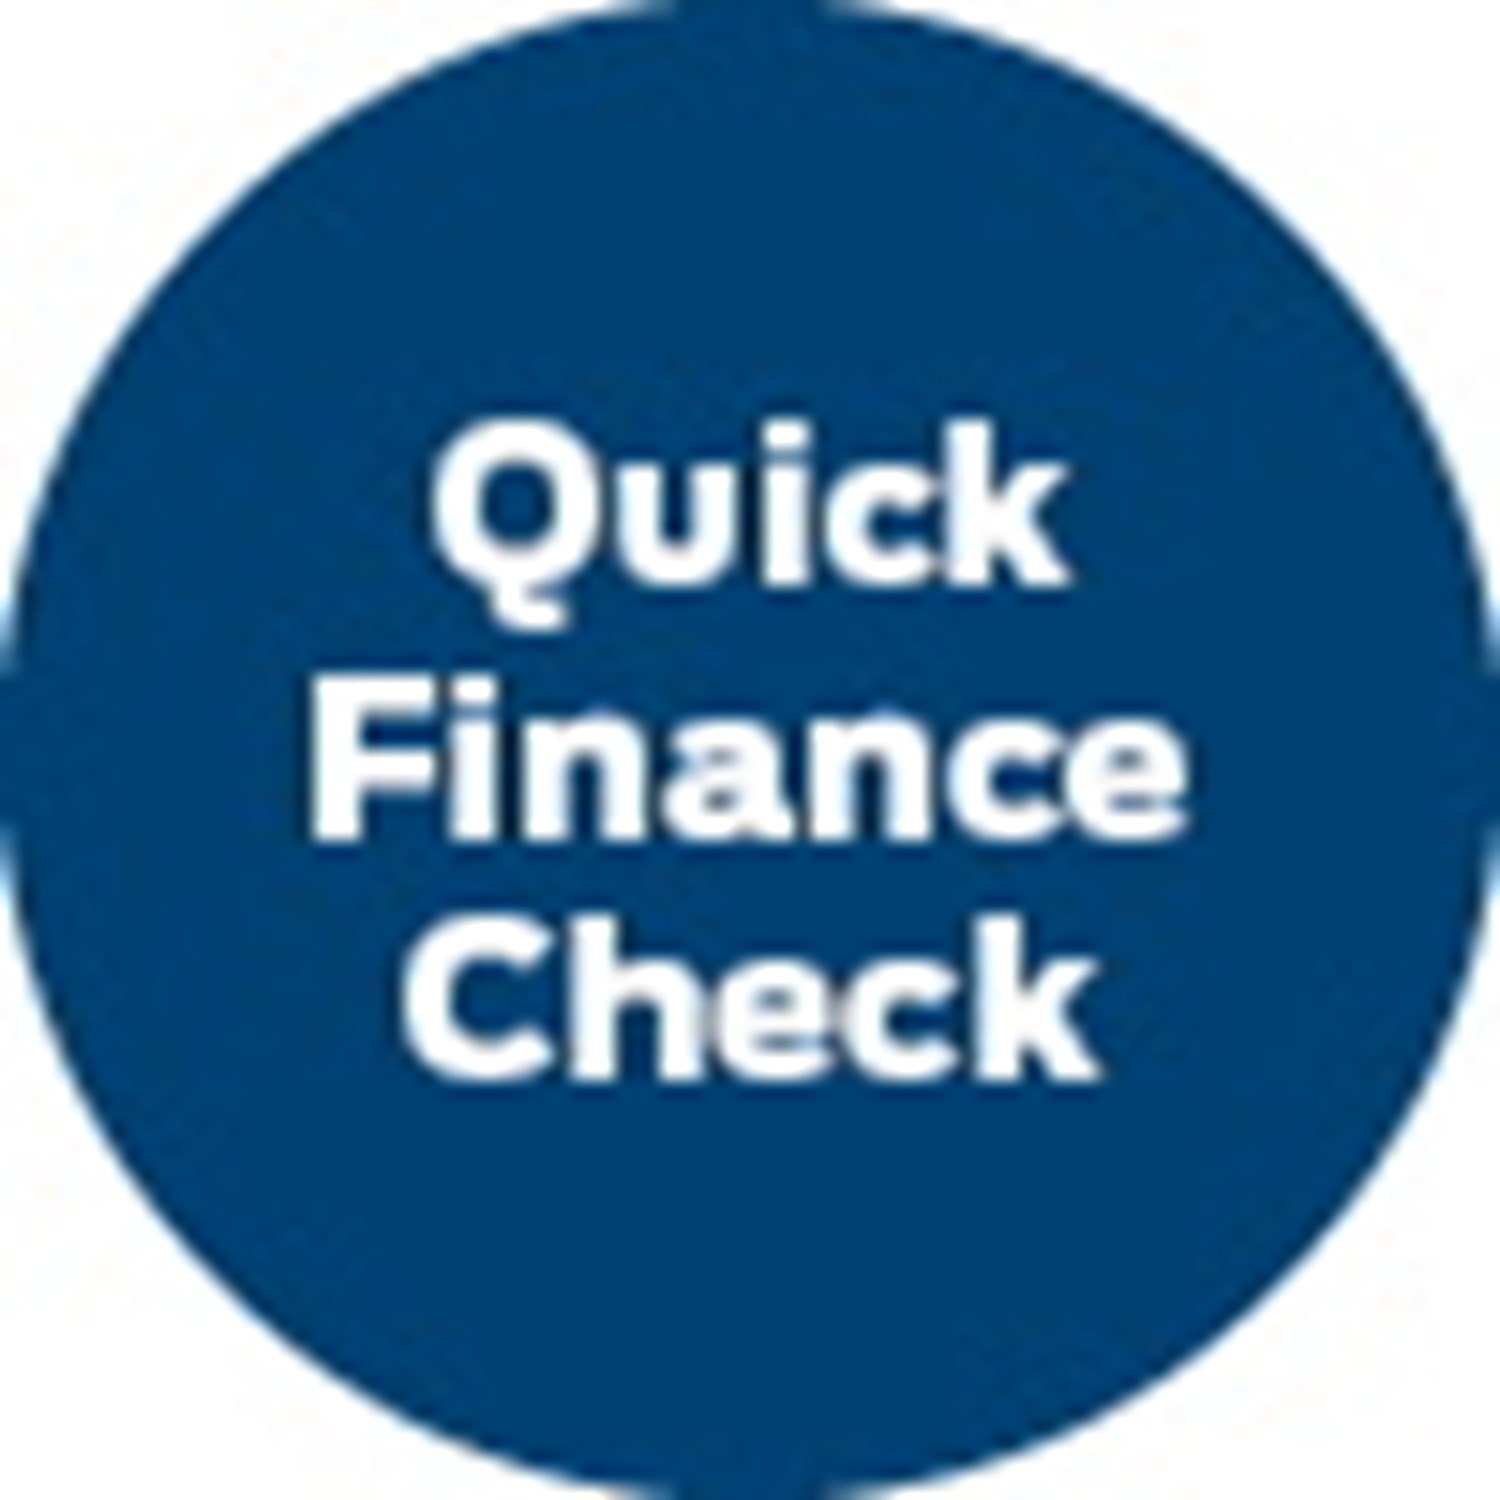 Quick finance check icon